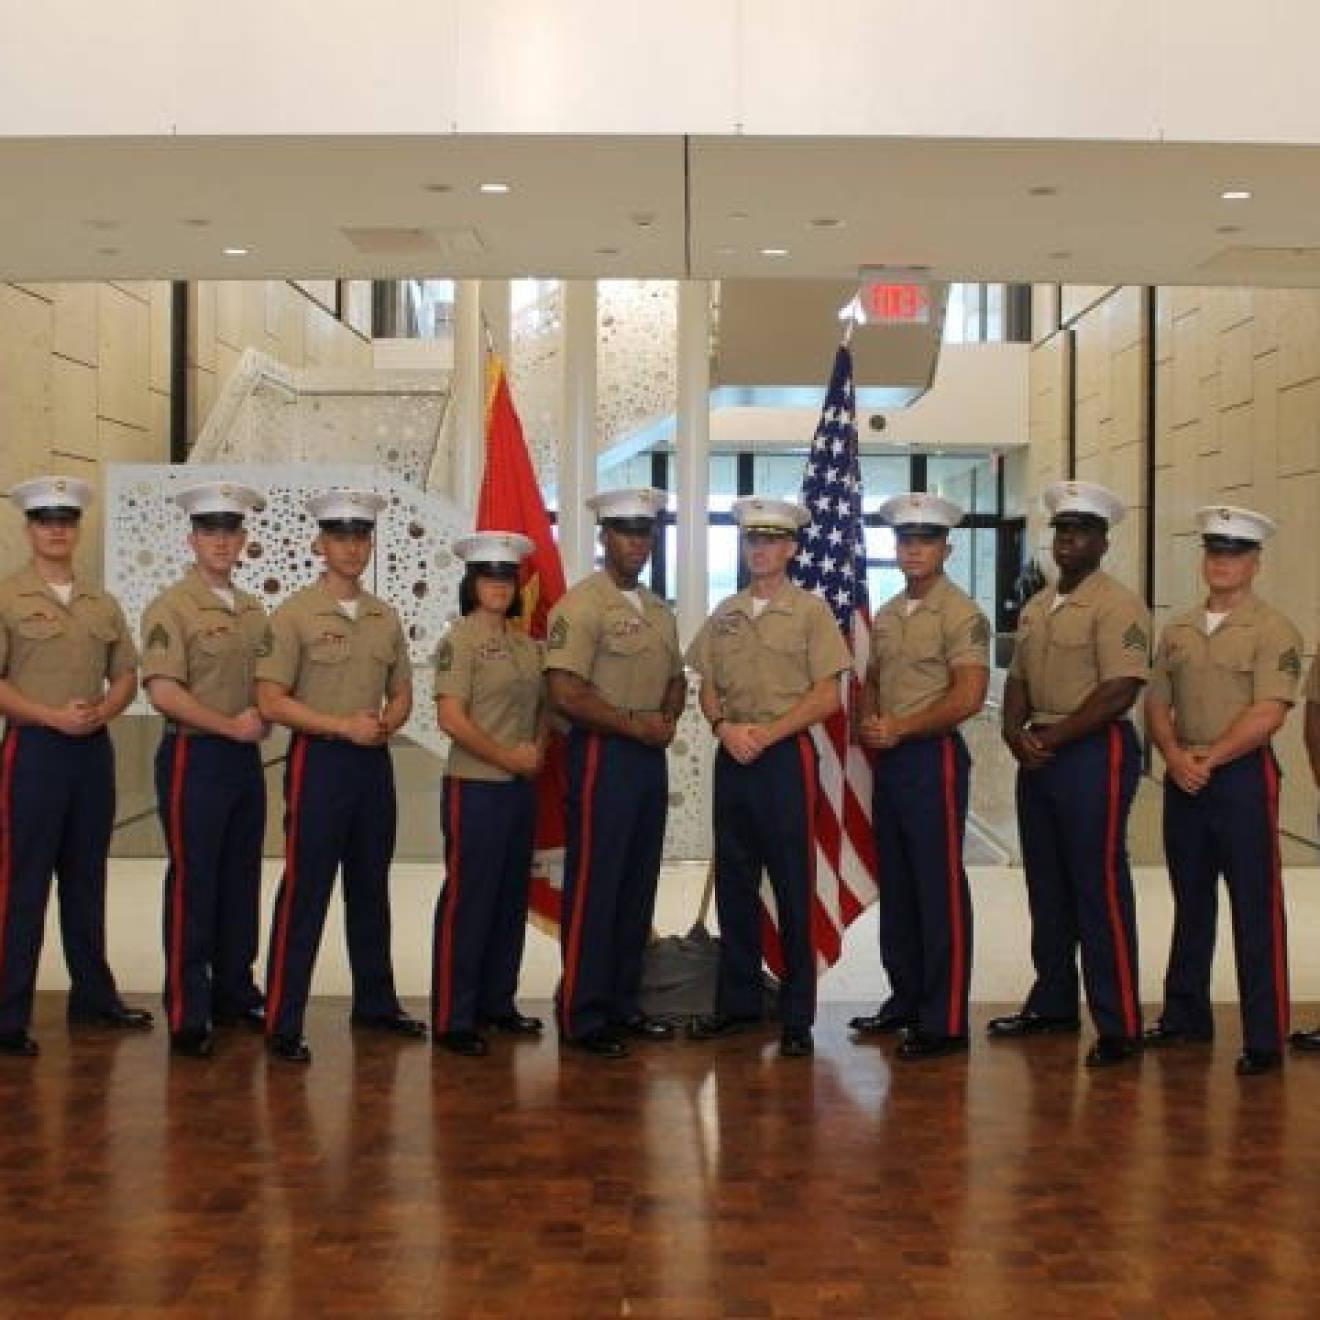 美国海军陆战队老兵，UCI社会学校友Andrew Truong ' 23(右四), pictured with fellow service members, posing at ease in their uniforms in front of flags.